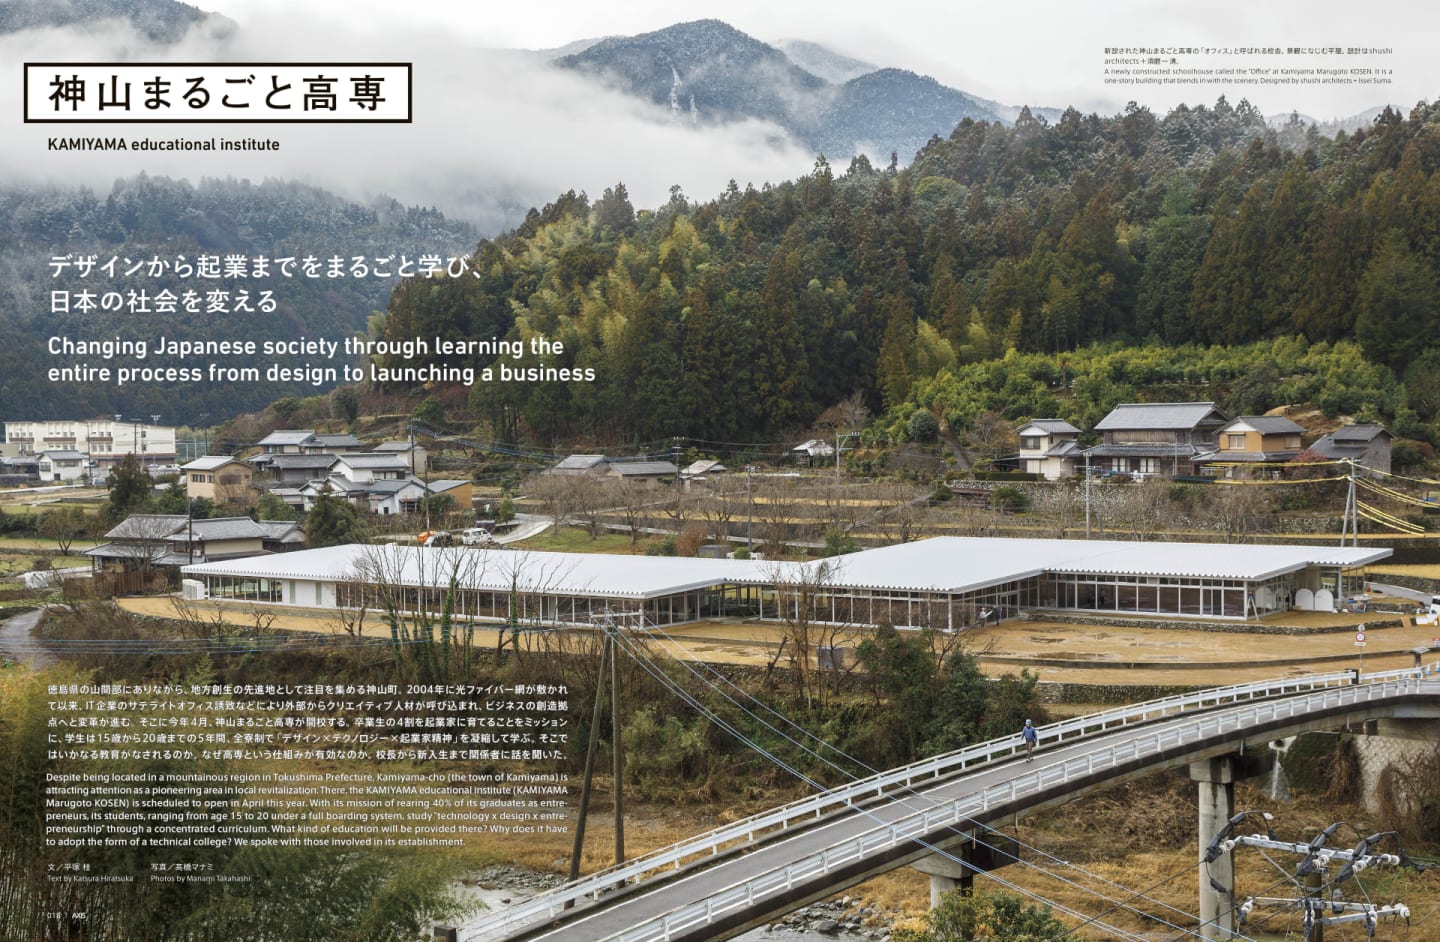 神山まるごと高専 デザインから起業までをまるごと学び、 日本の社会を変える